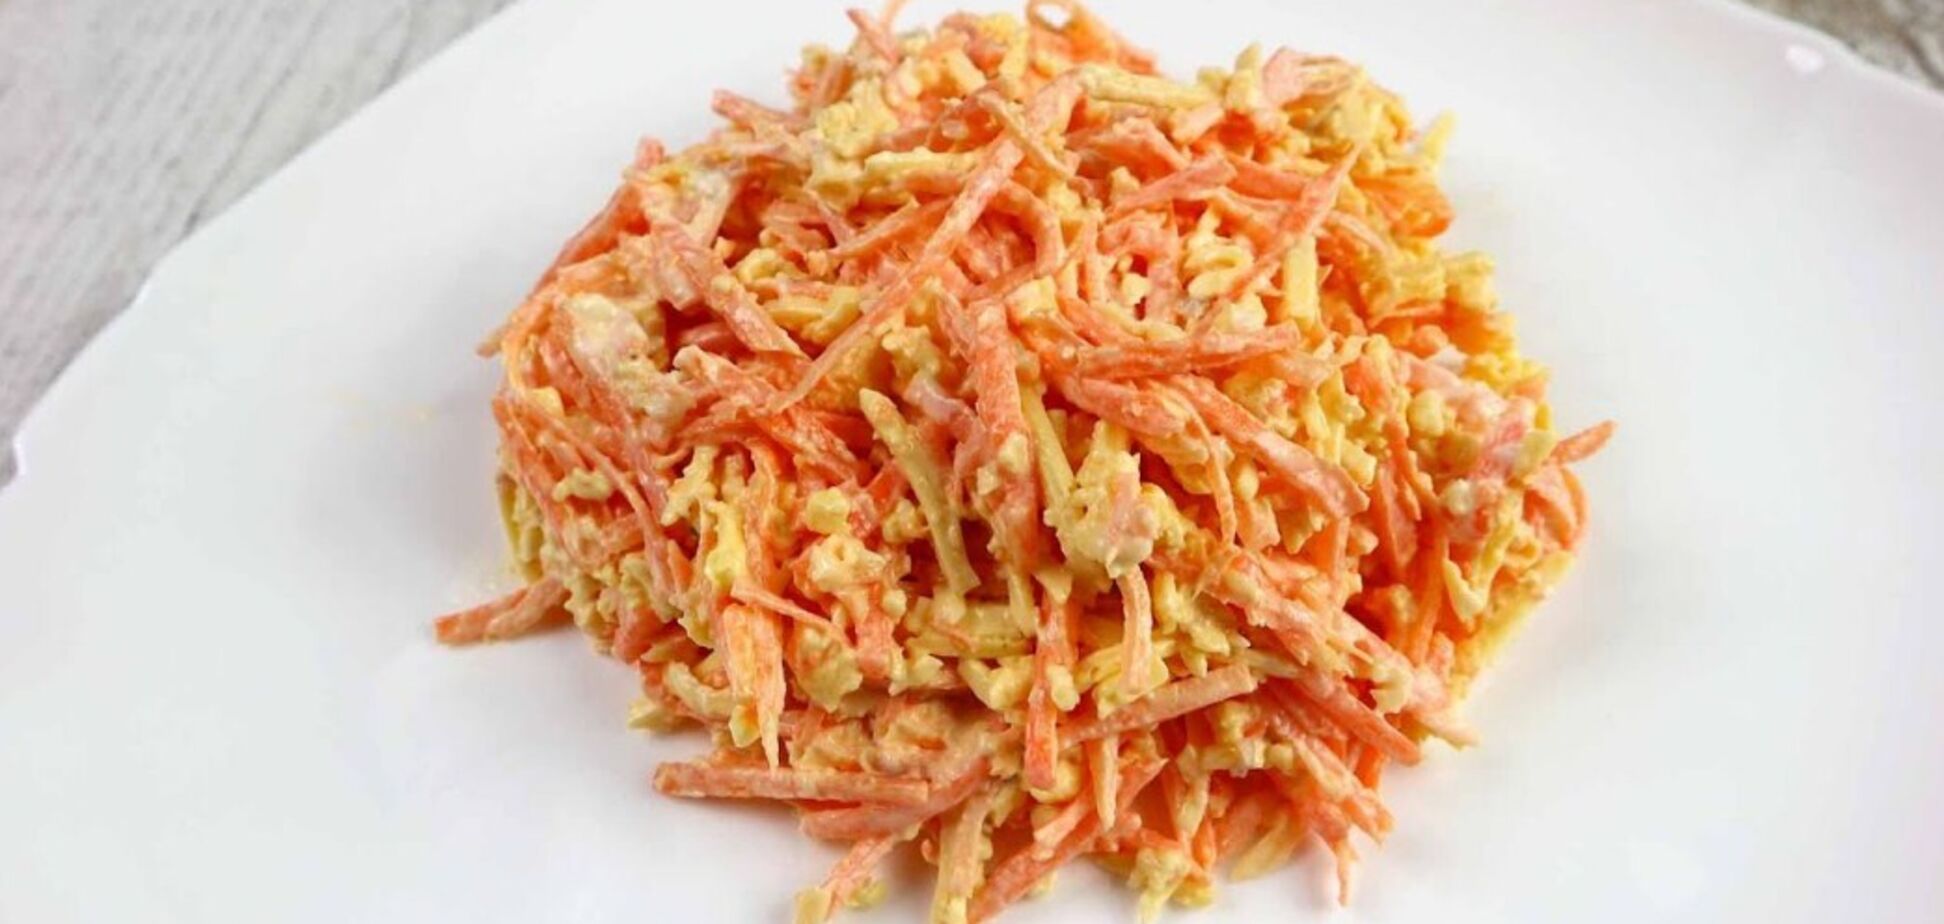 Вкусный морковный салат и намазка одновременно: с яйцами, сыром и чесноком